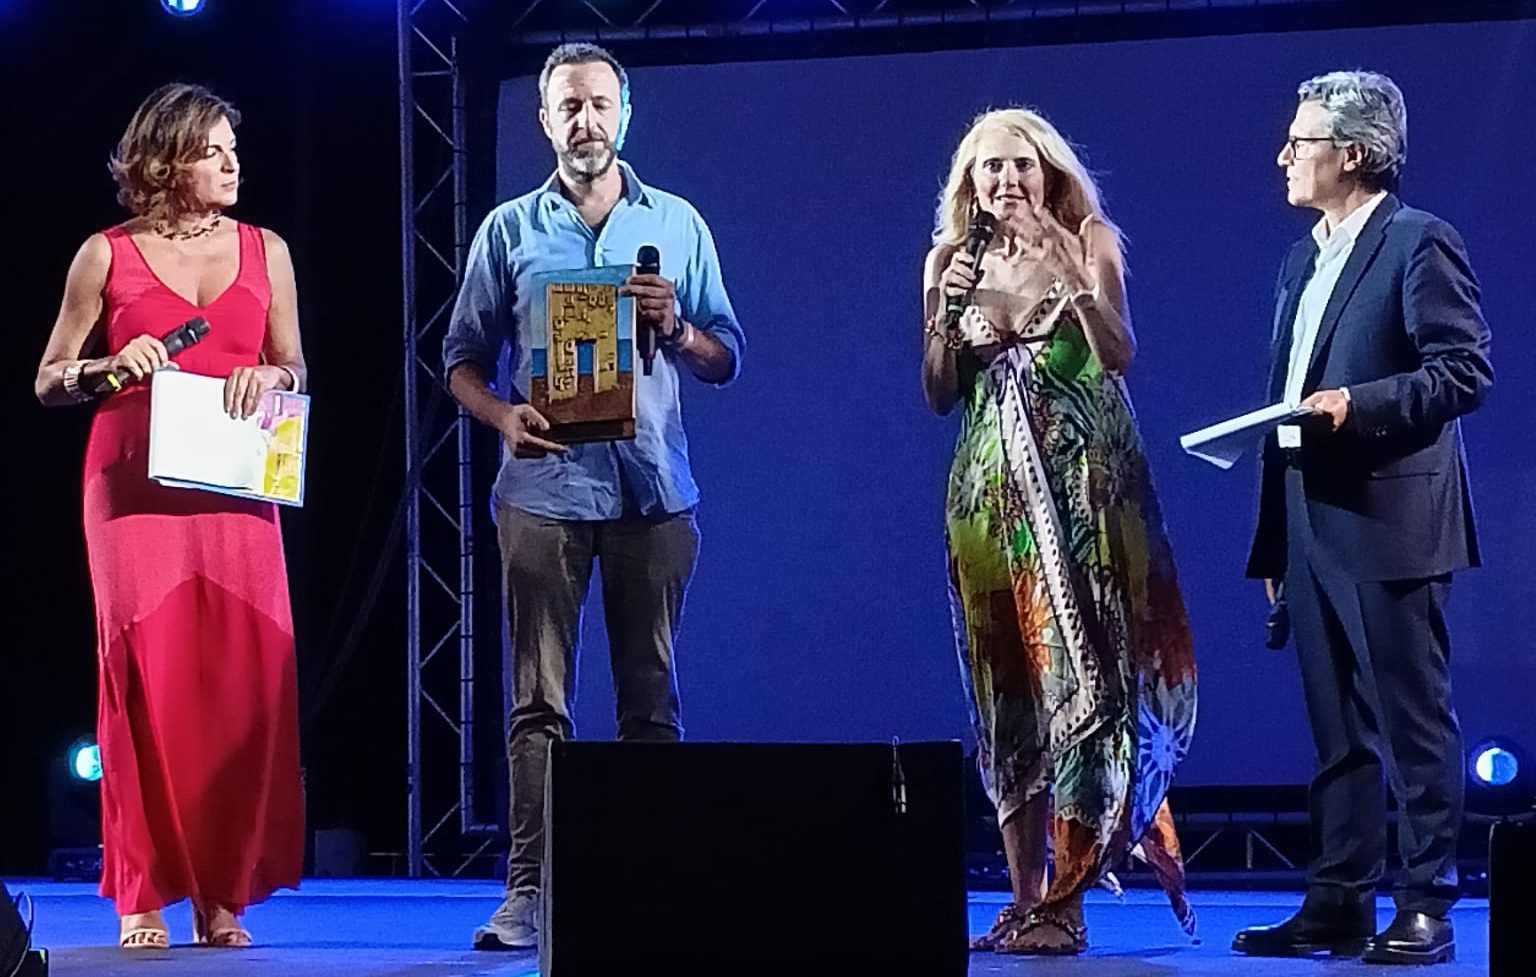 Lampedus’Amore, i vincitori del premio giornalistico Cristiana Matano